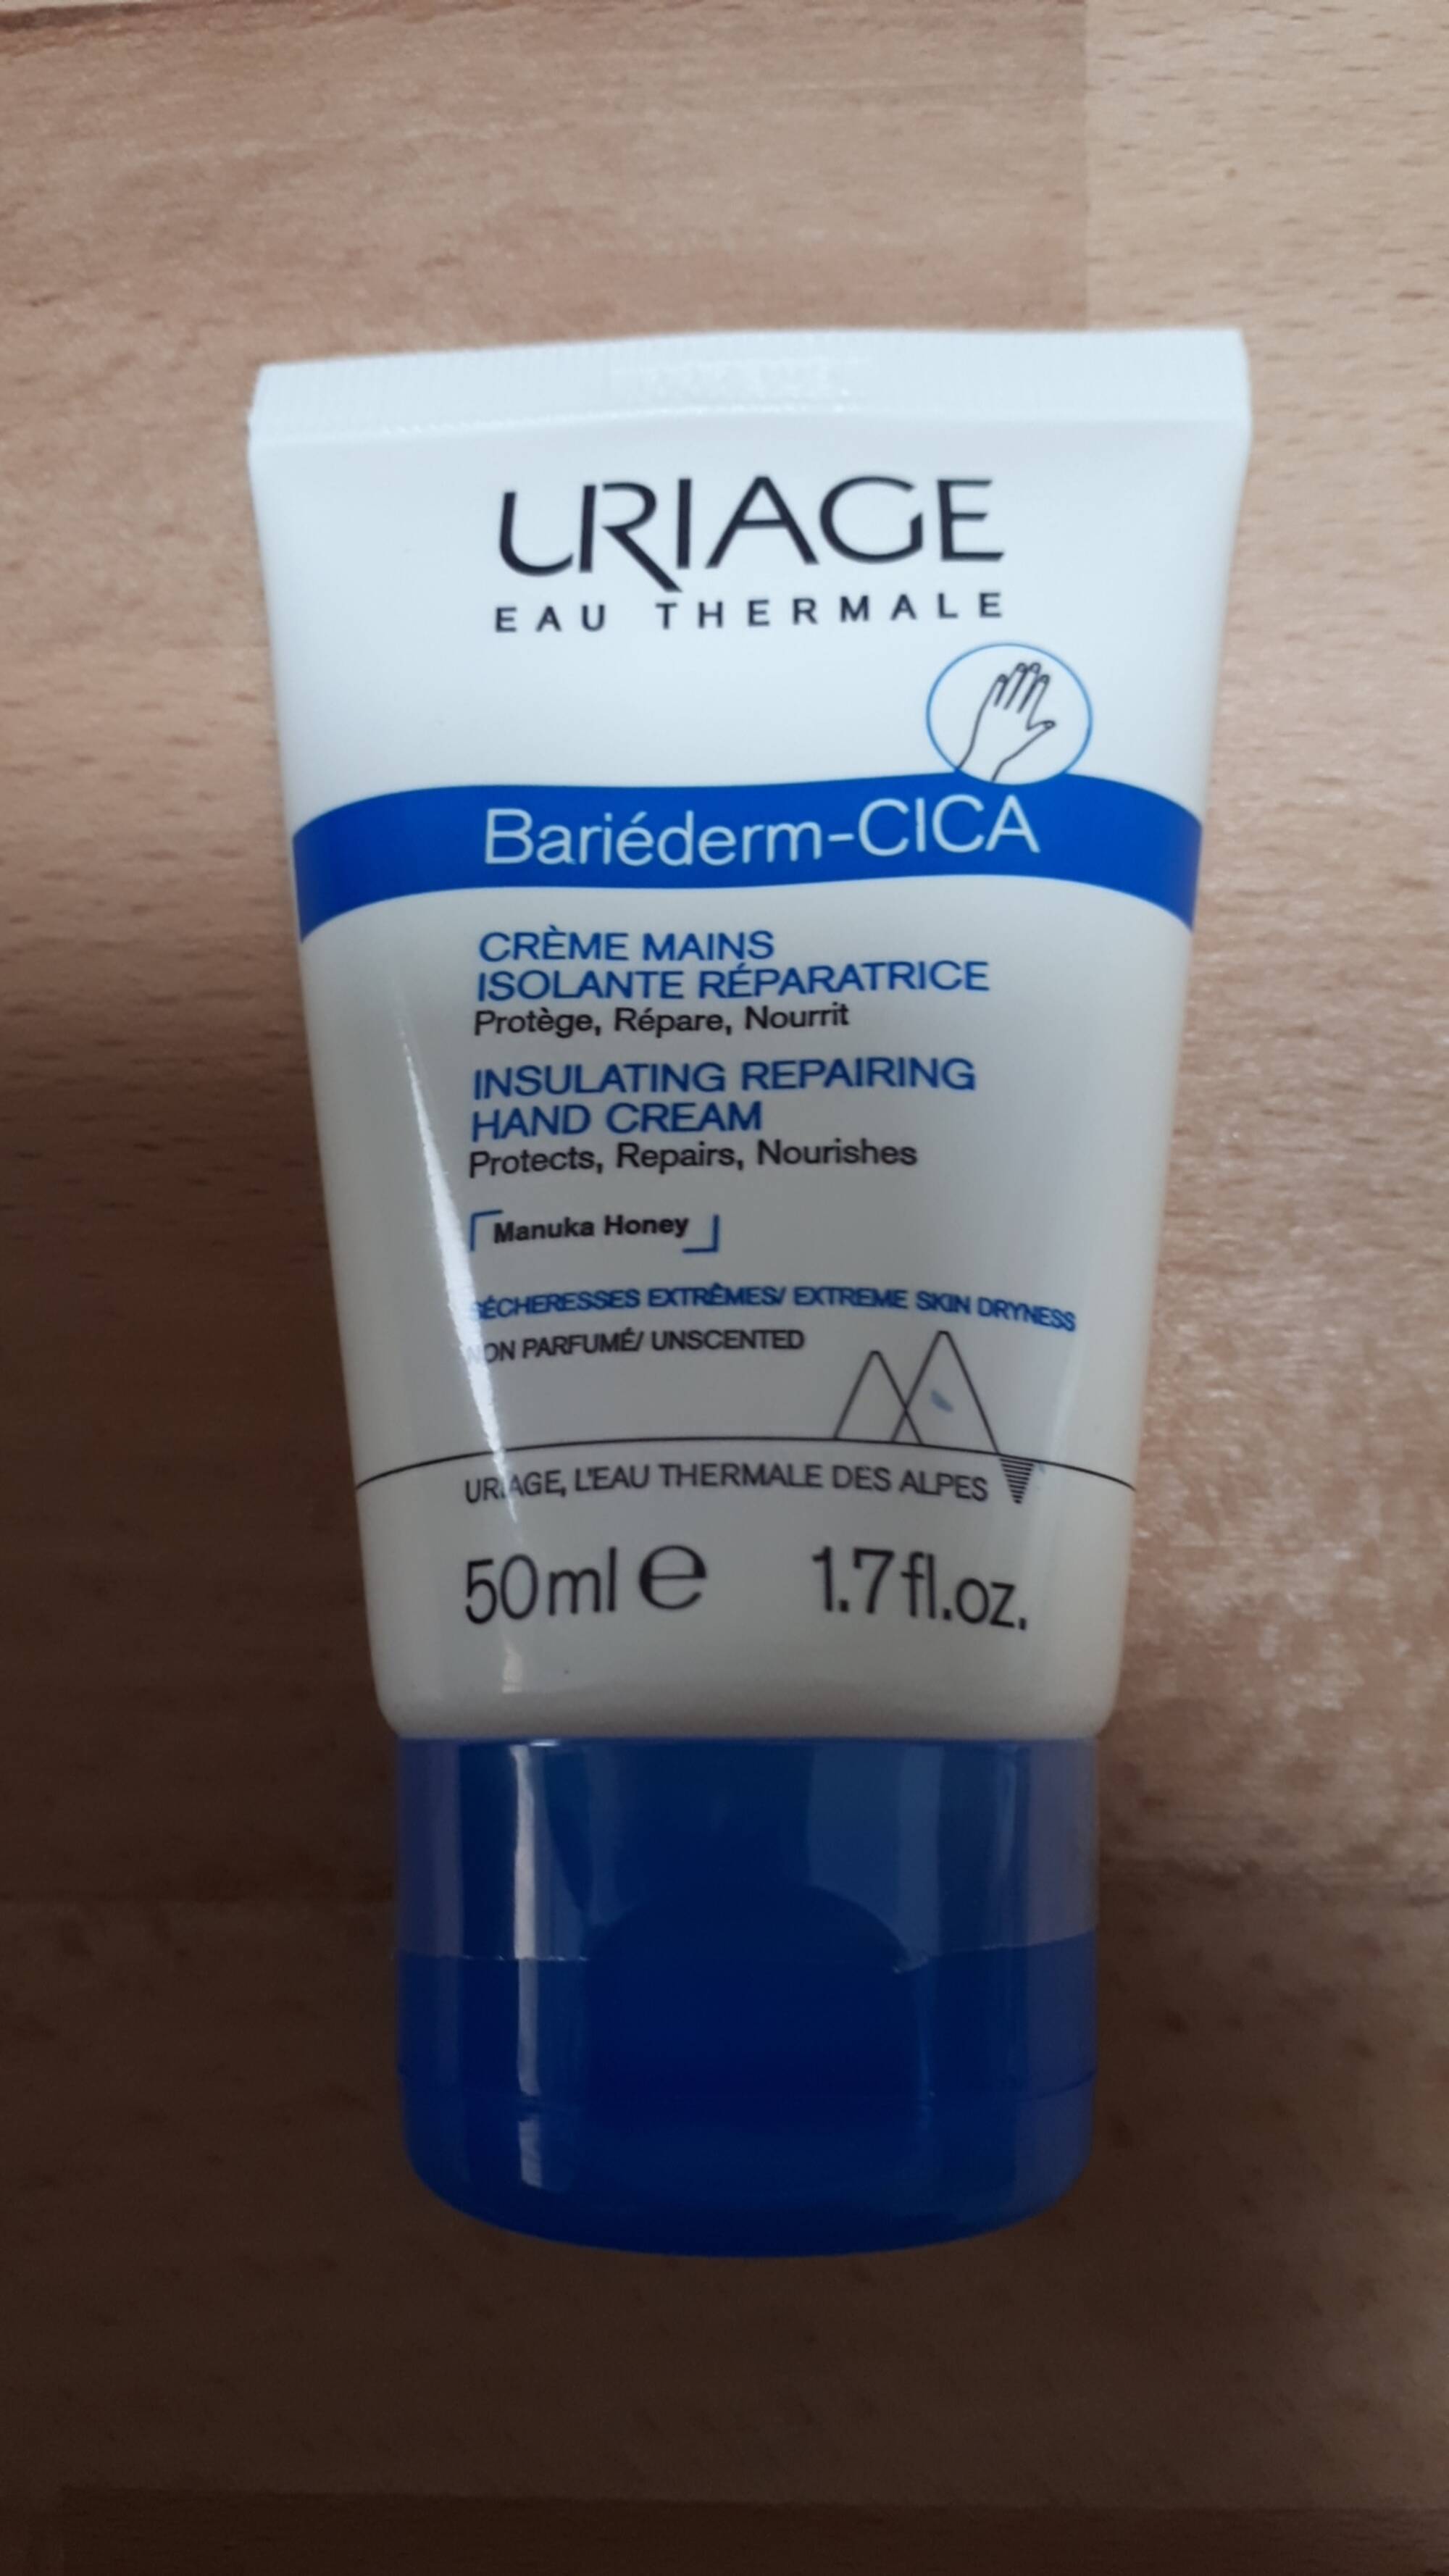 URIAGE - Bariéderm-CICA - Crème mains isolante réparatrice